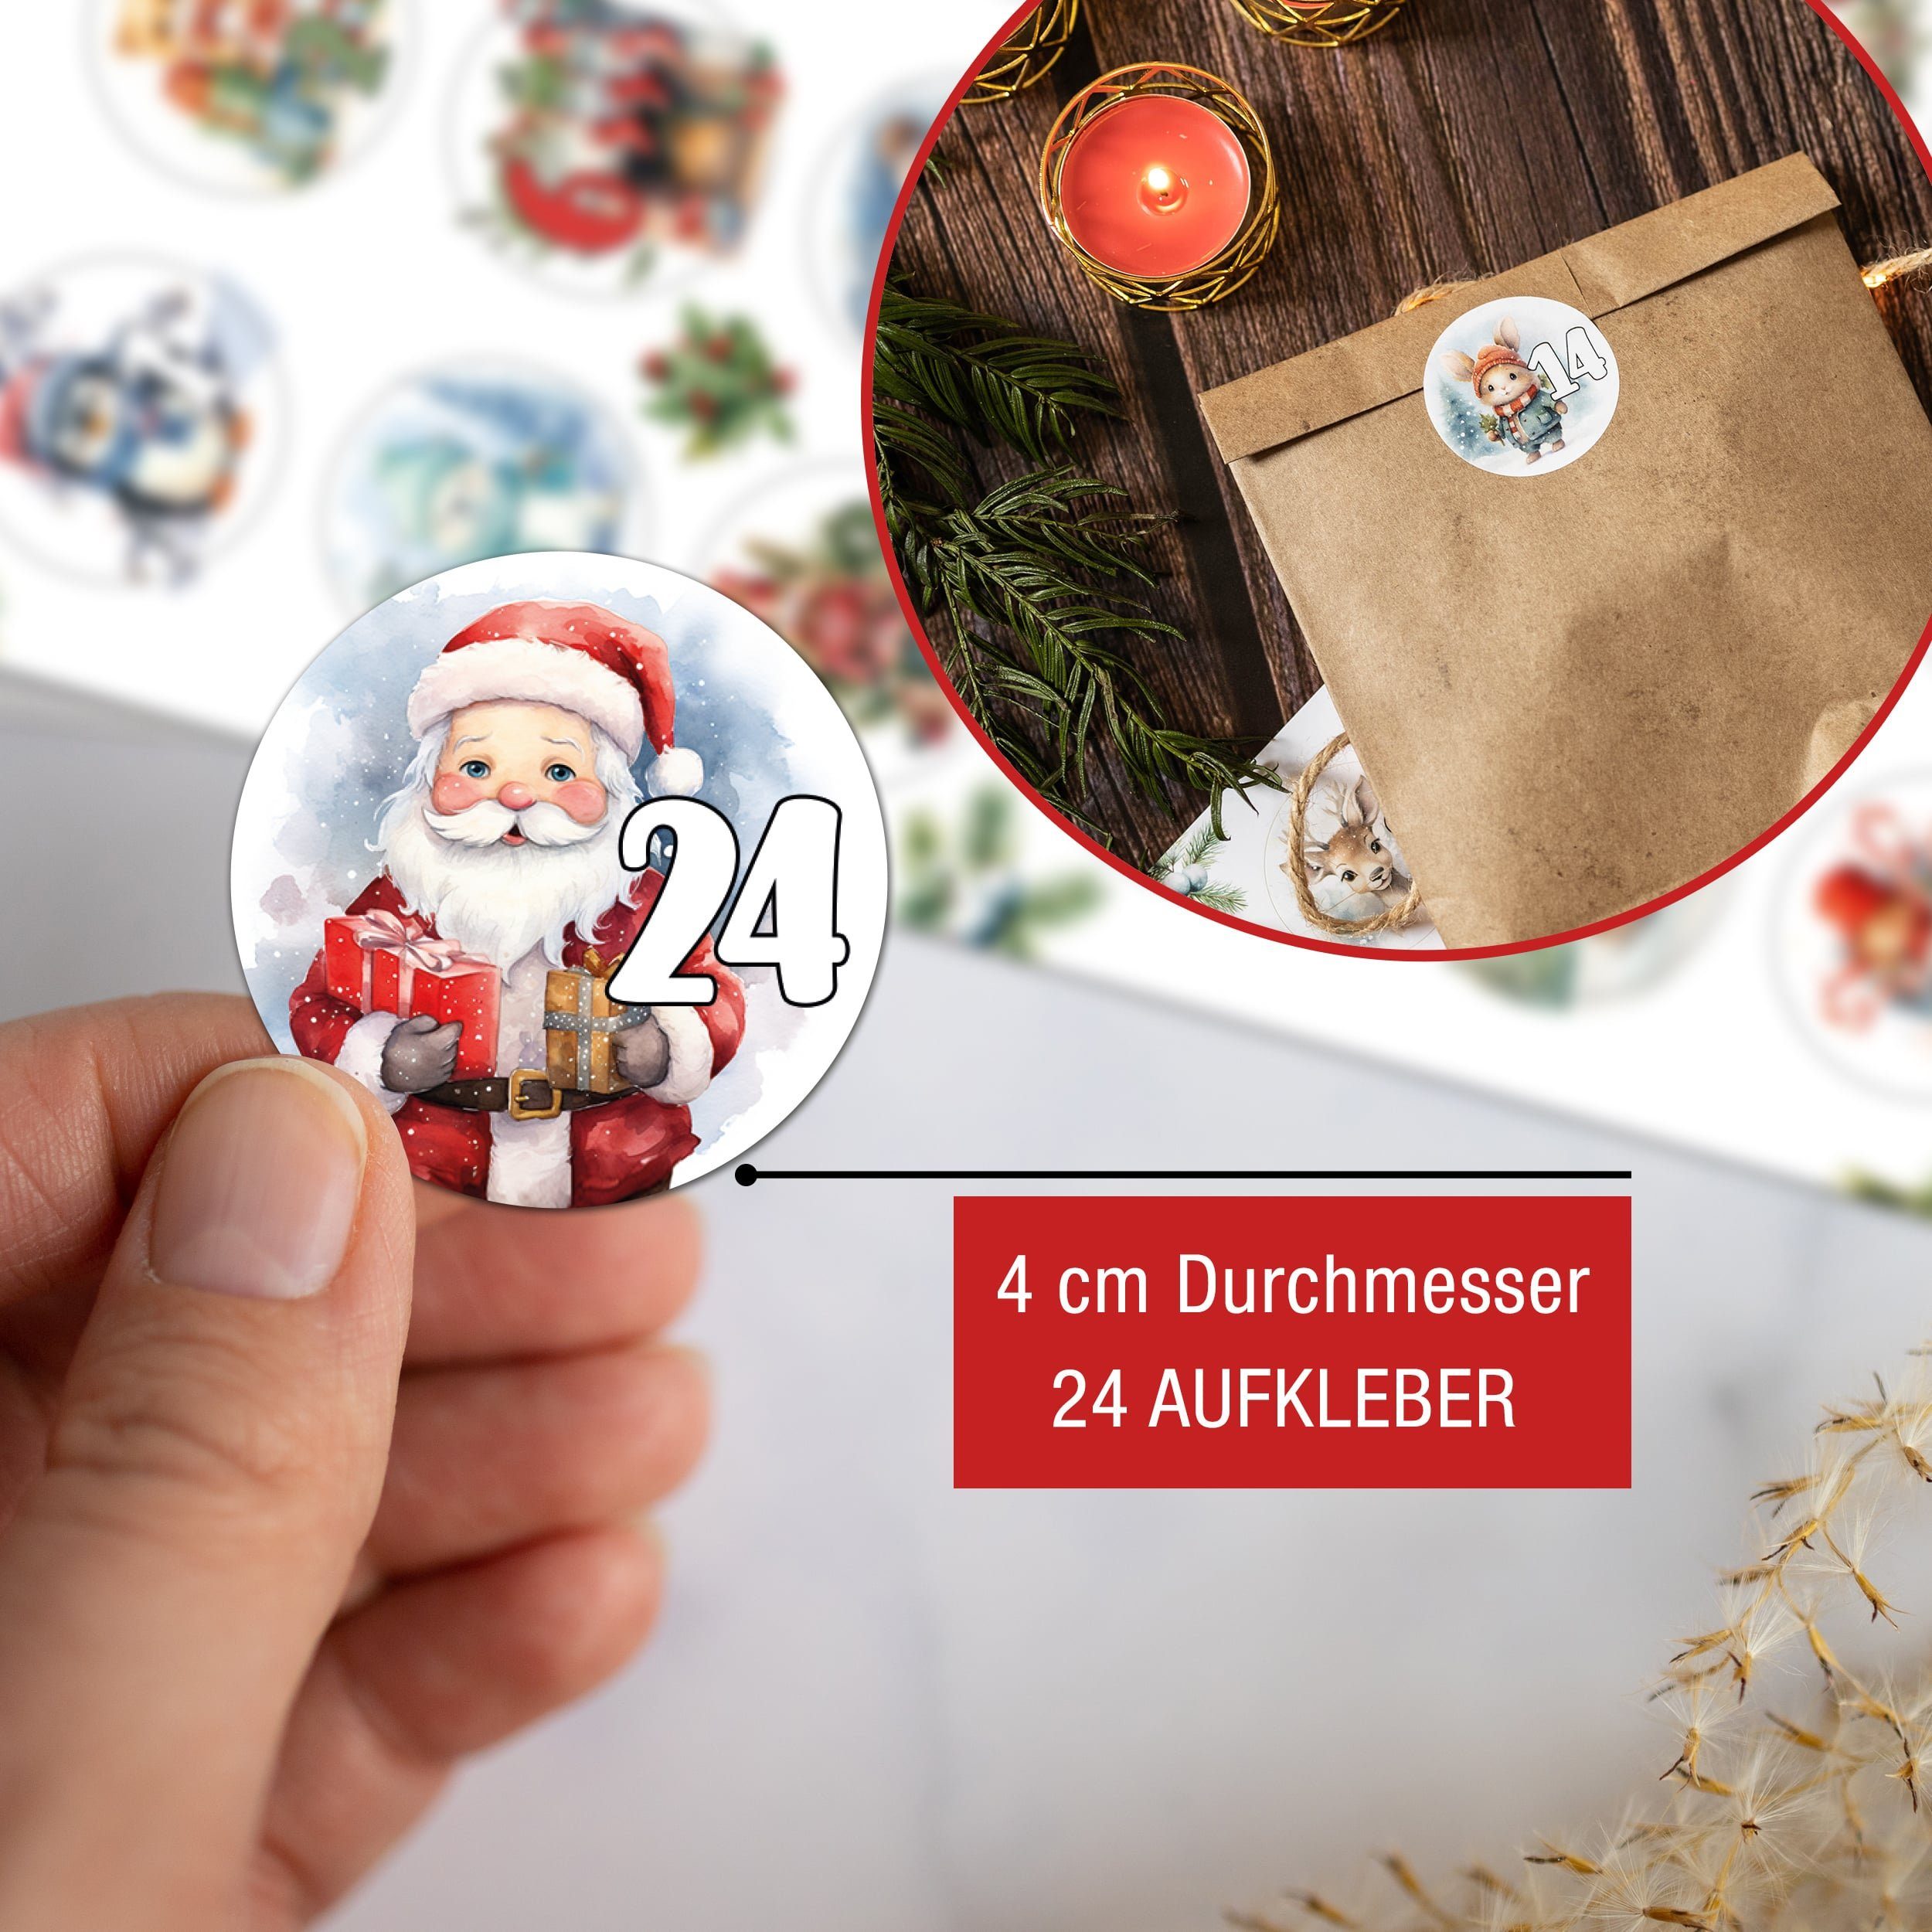 Kartpapier zum befüllen, basteln 24 Weihnachskalender Aufkleber, Adventskalender DIY + Tüten TOBJA Adventskalender